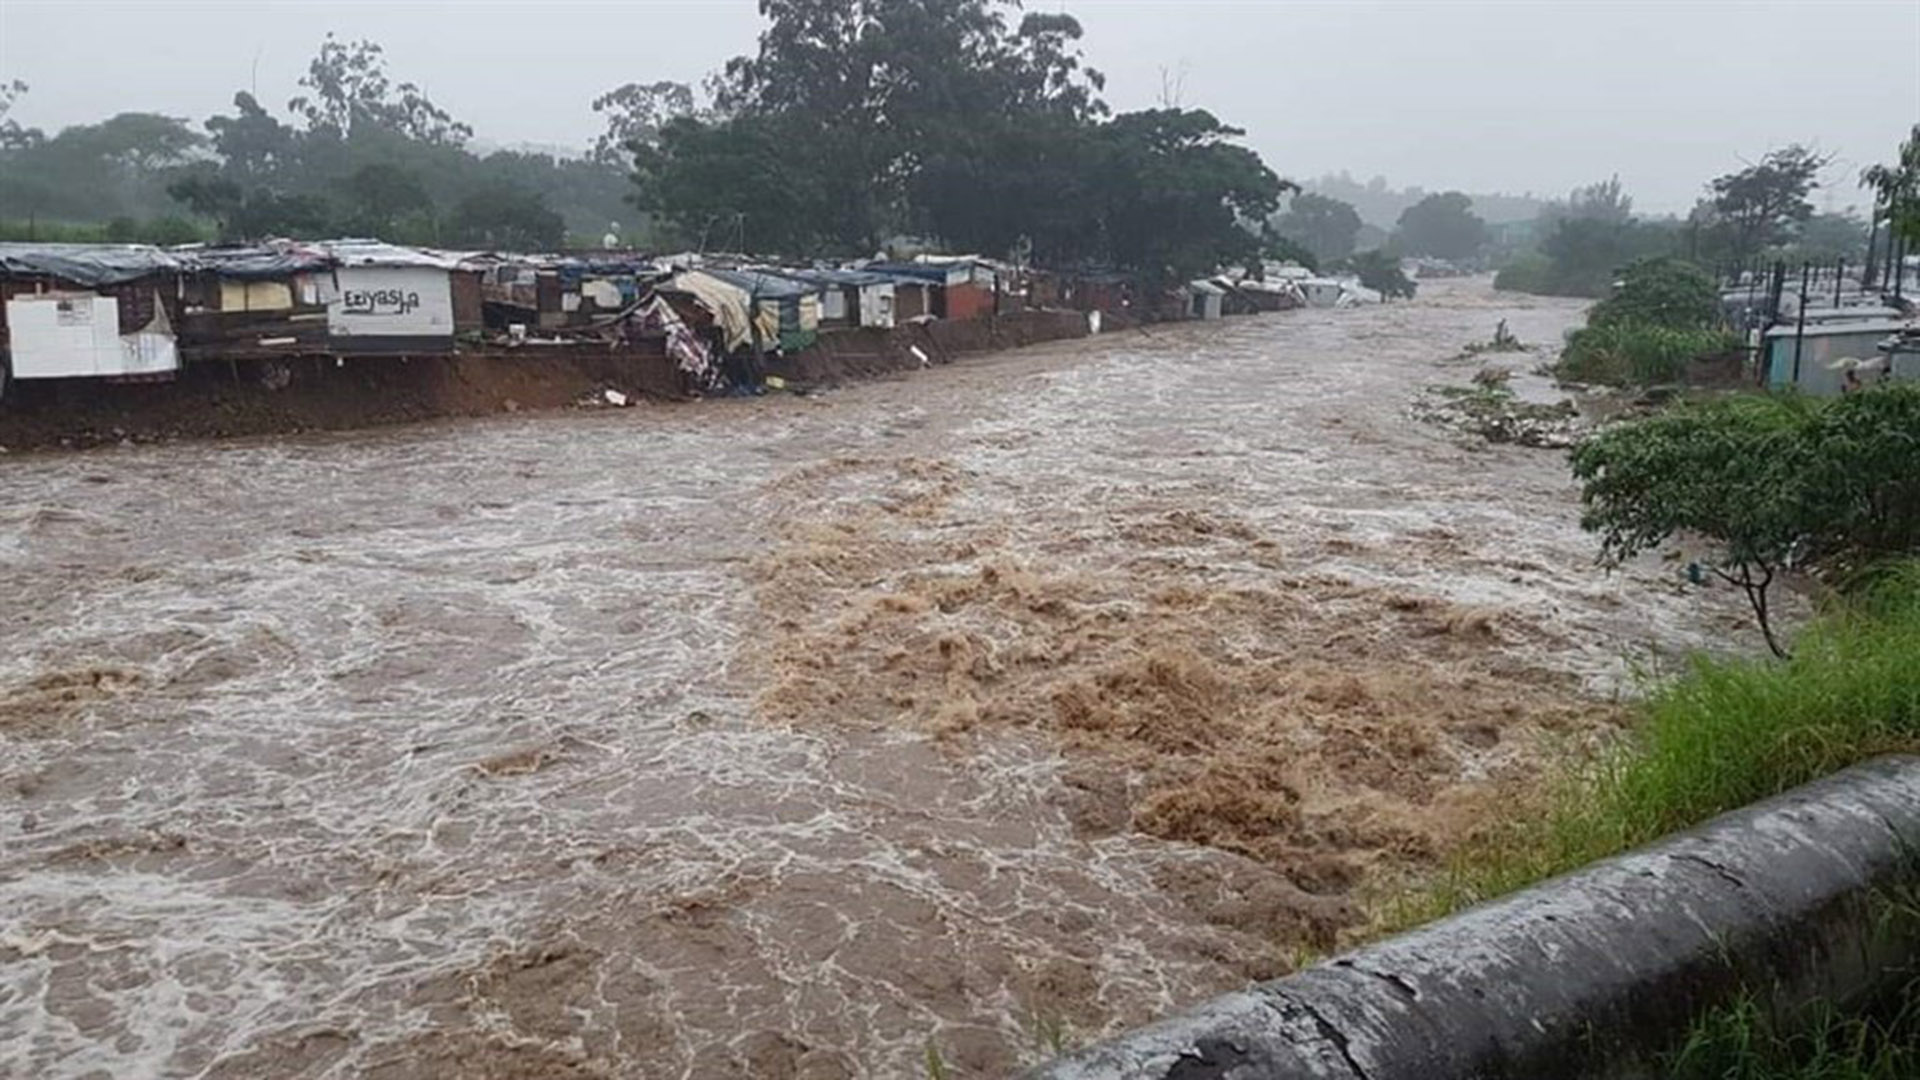 KZN floods 2019